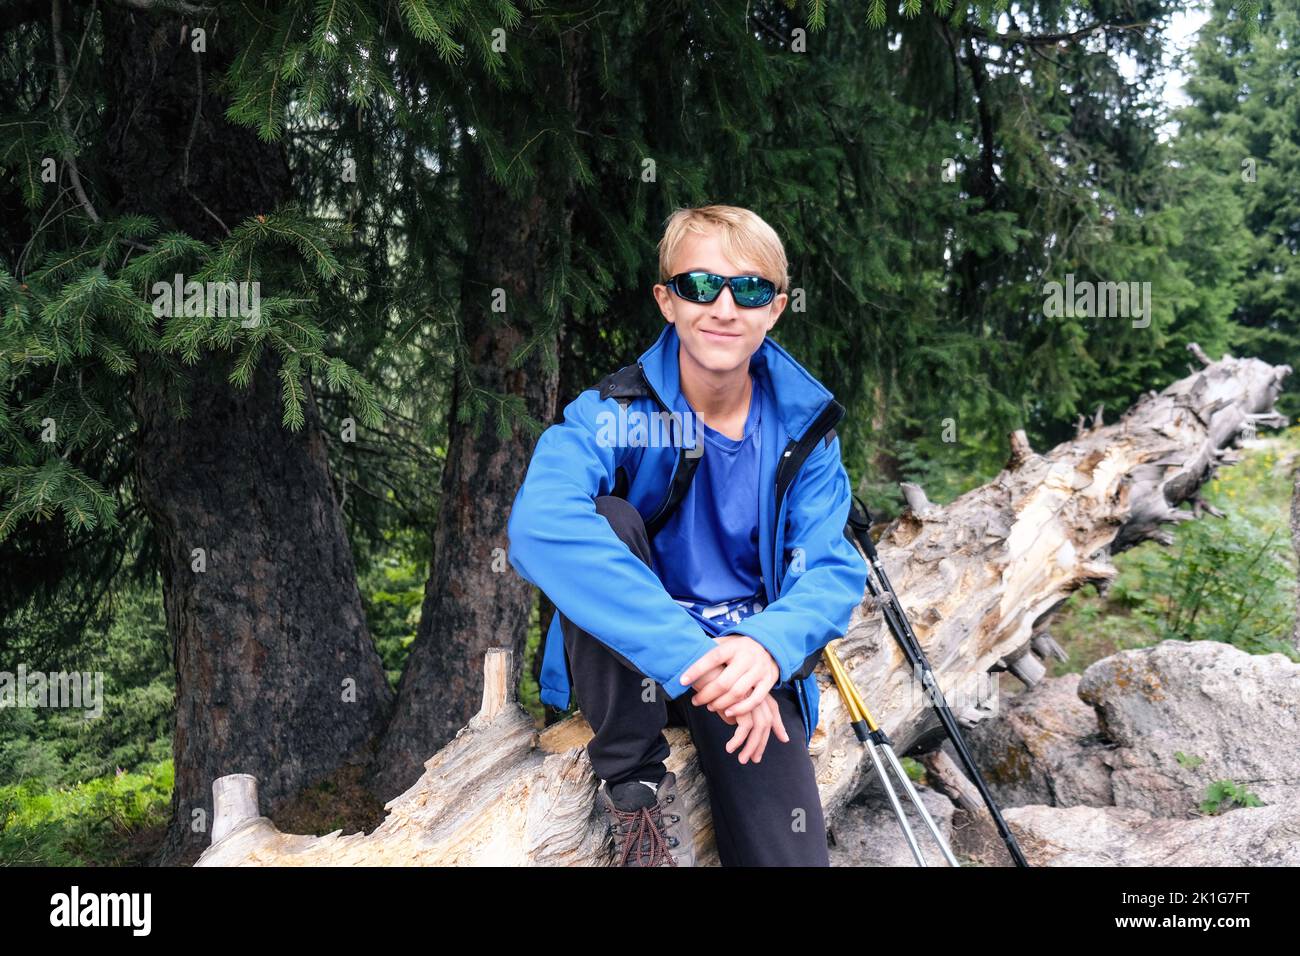 Porträt eines jungen Reisenden in einer blauen Jacke und einer dunklen Brille auf einem Baum sitzend. Stockfoto